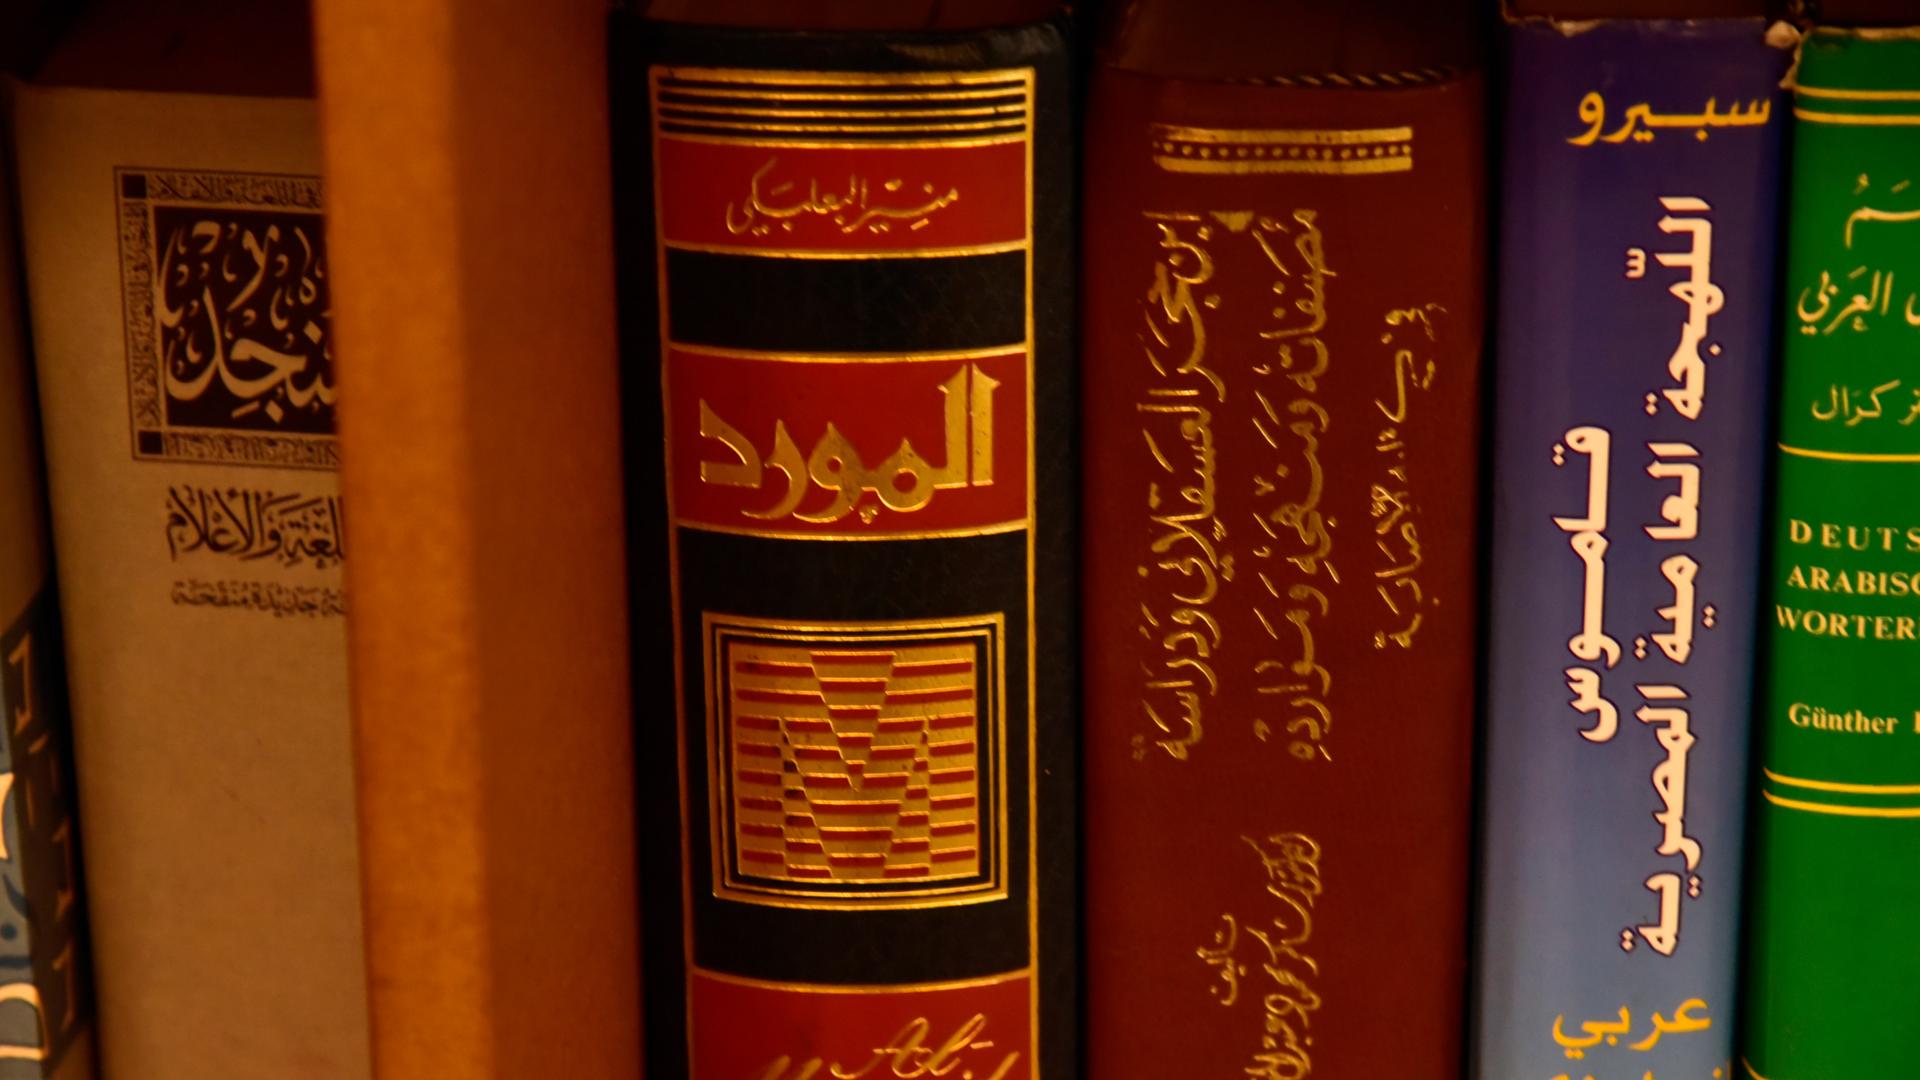 Die Arabische Bibliothek Baynatna in Berlin ist ein Treffpunkt für Menschen mit arabischer Sprache. 